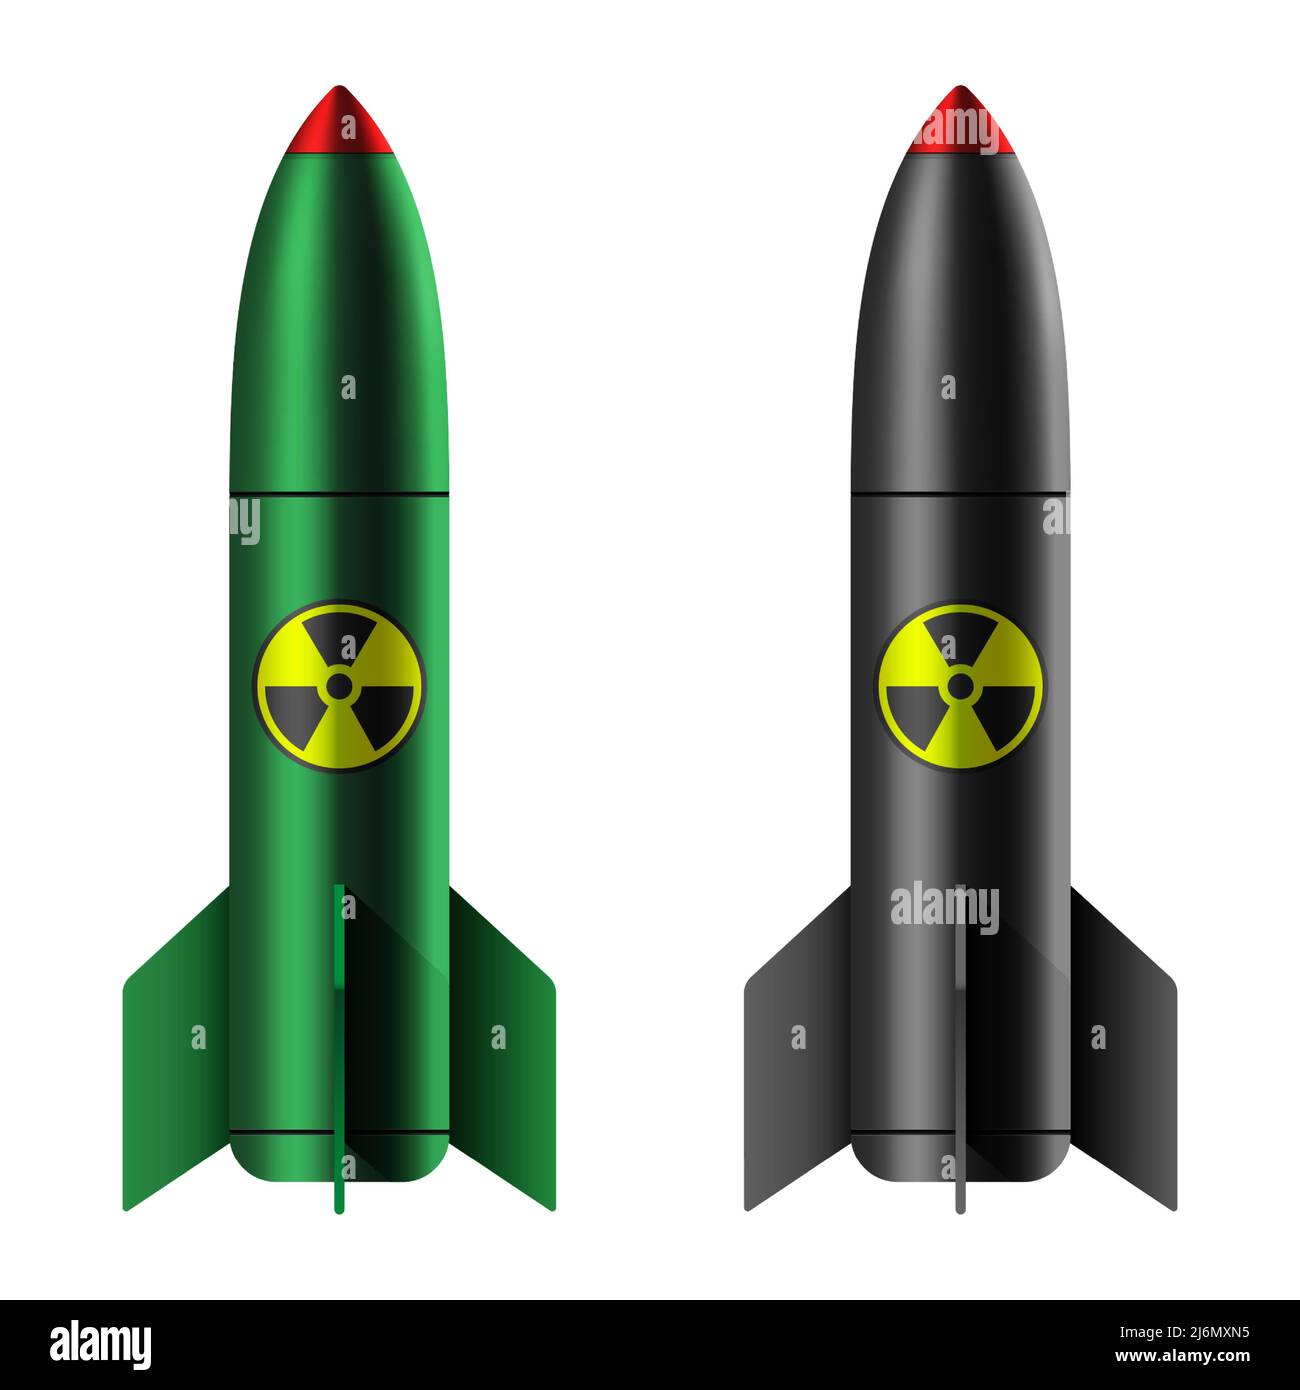 Bombe atomique isolée sur fond blanc. Arme nucléaire verte et noire avec icône de rayonnement, illustration vectorielle. Illustration de Vecteur